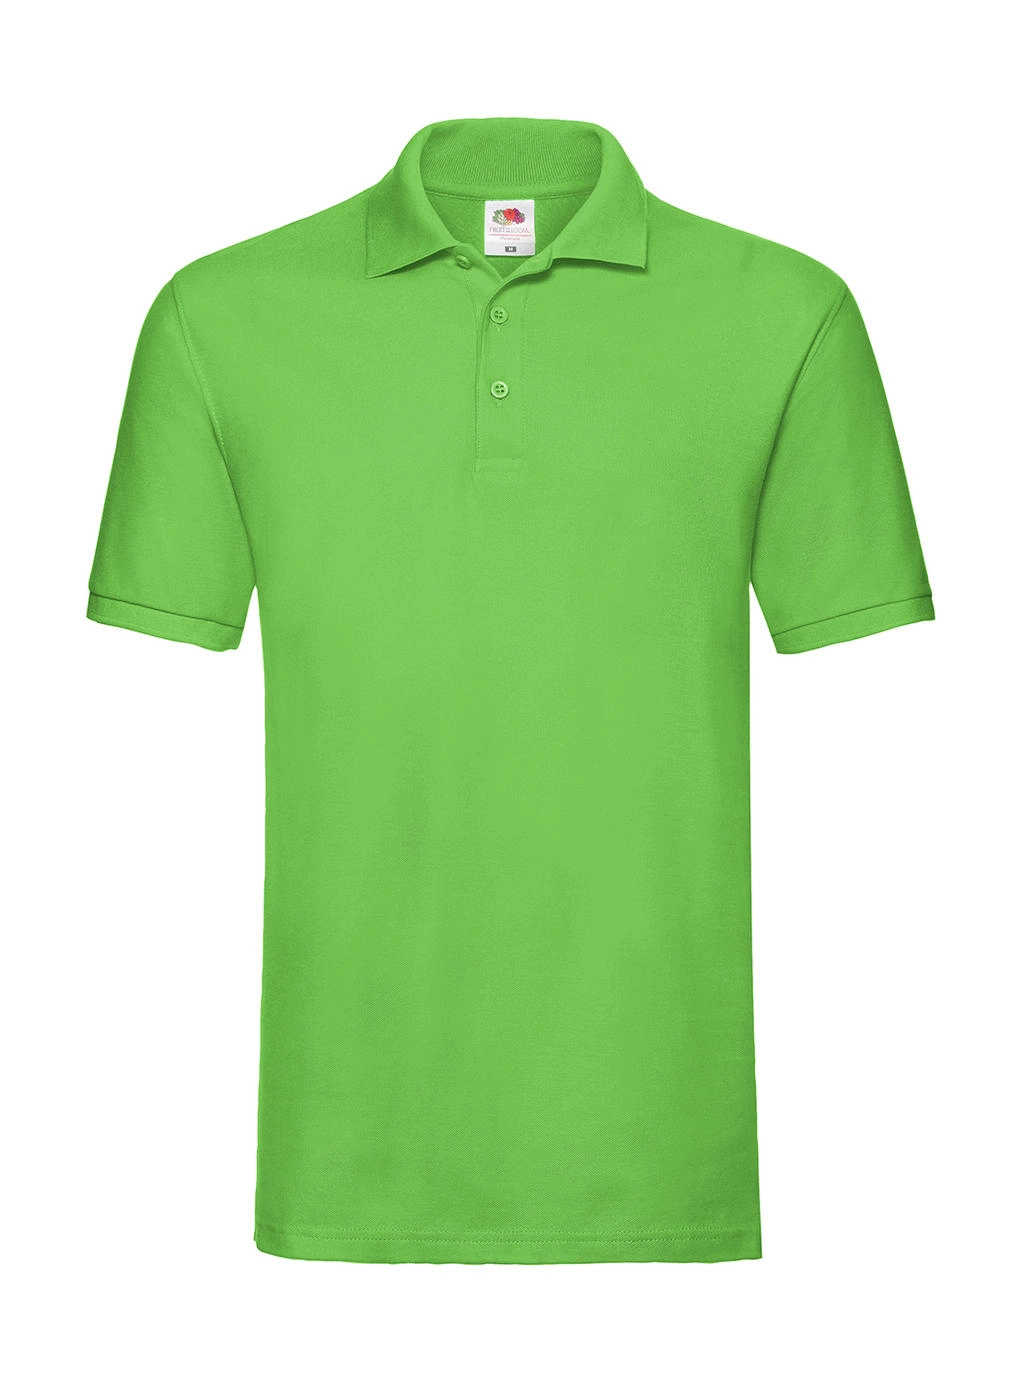 Premium Polo zum Besticken und Bedrucken in der Farbe Lime Green mit Ihren Logo, Schriftzug oder Motiv.